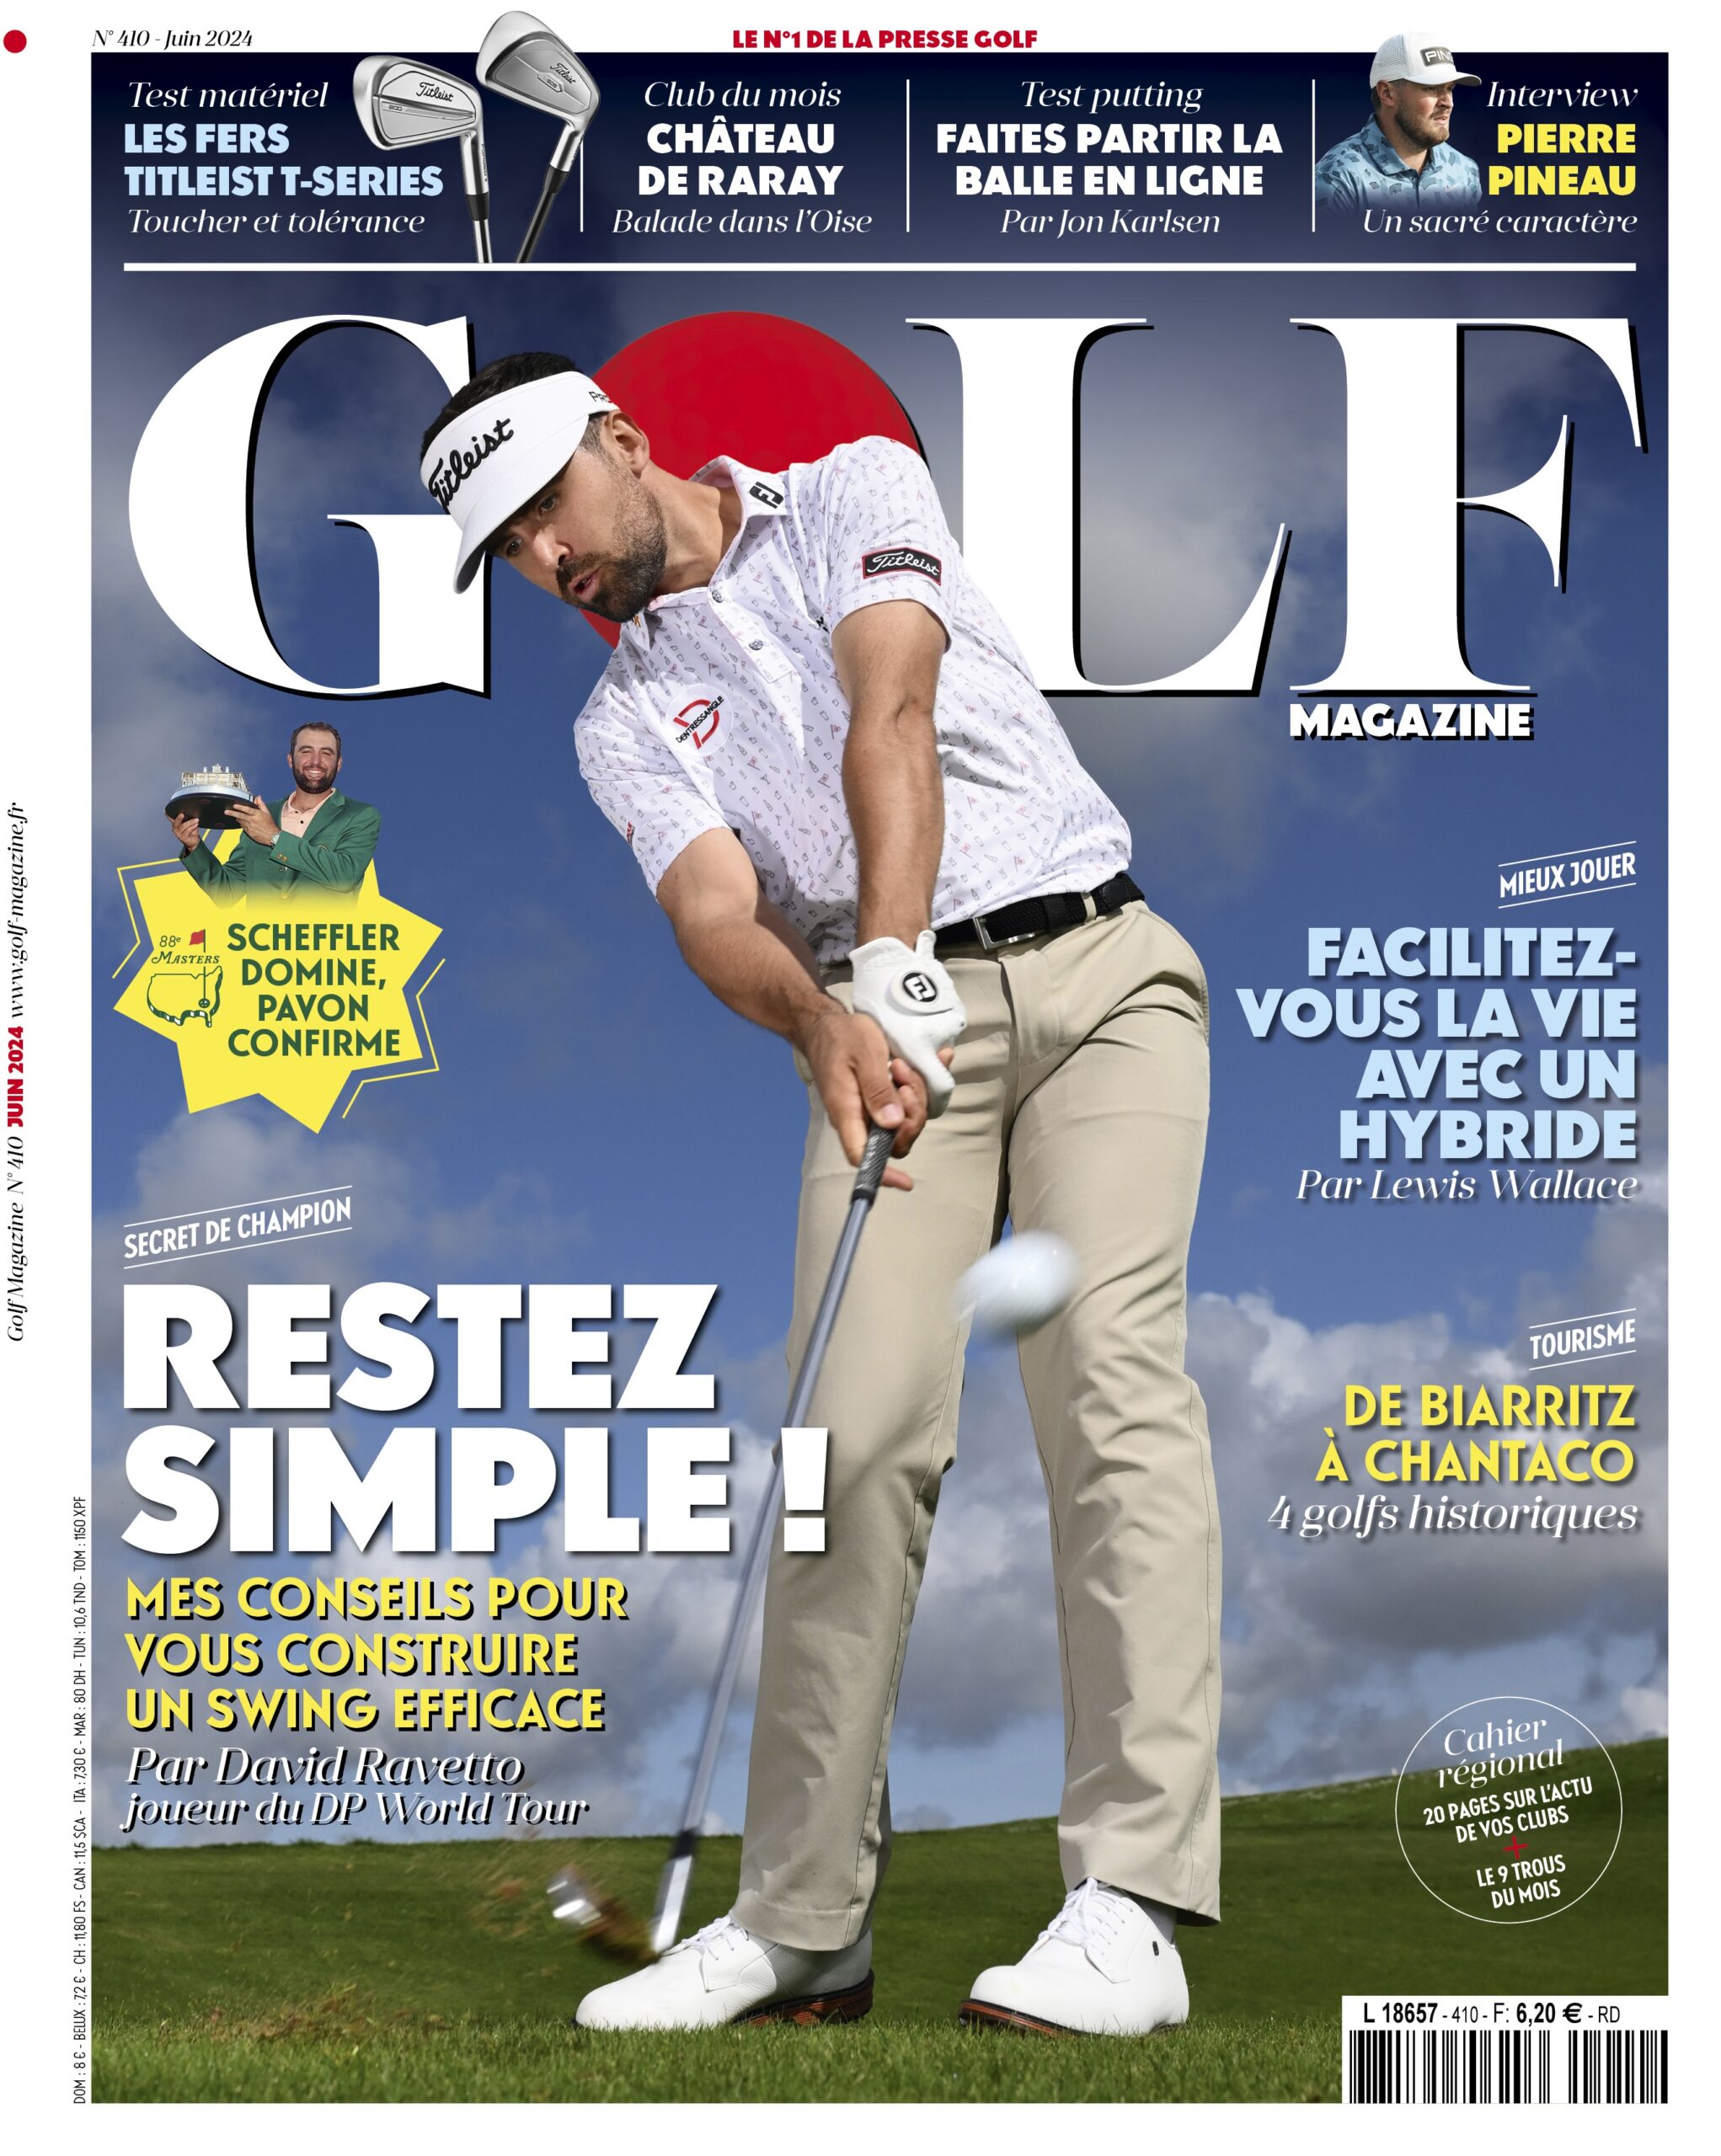 Golf Magazine n°410 : Construisez un swing simple et efficace !